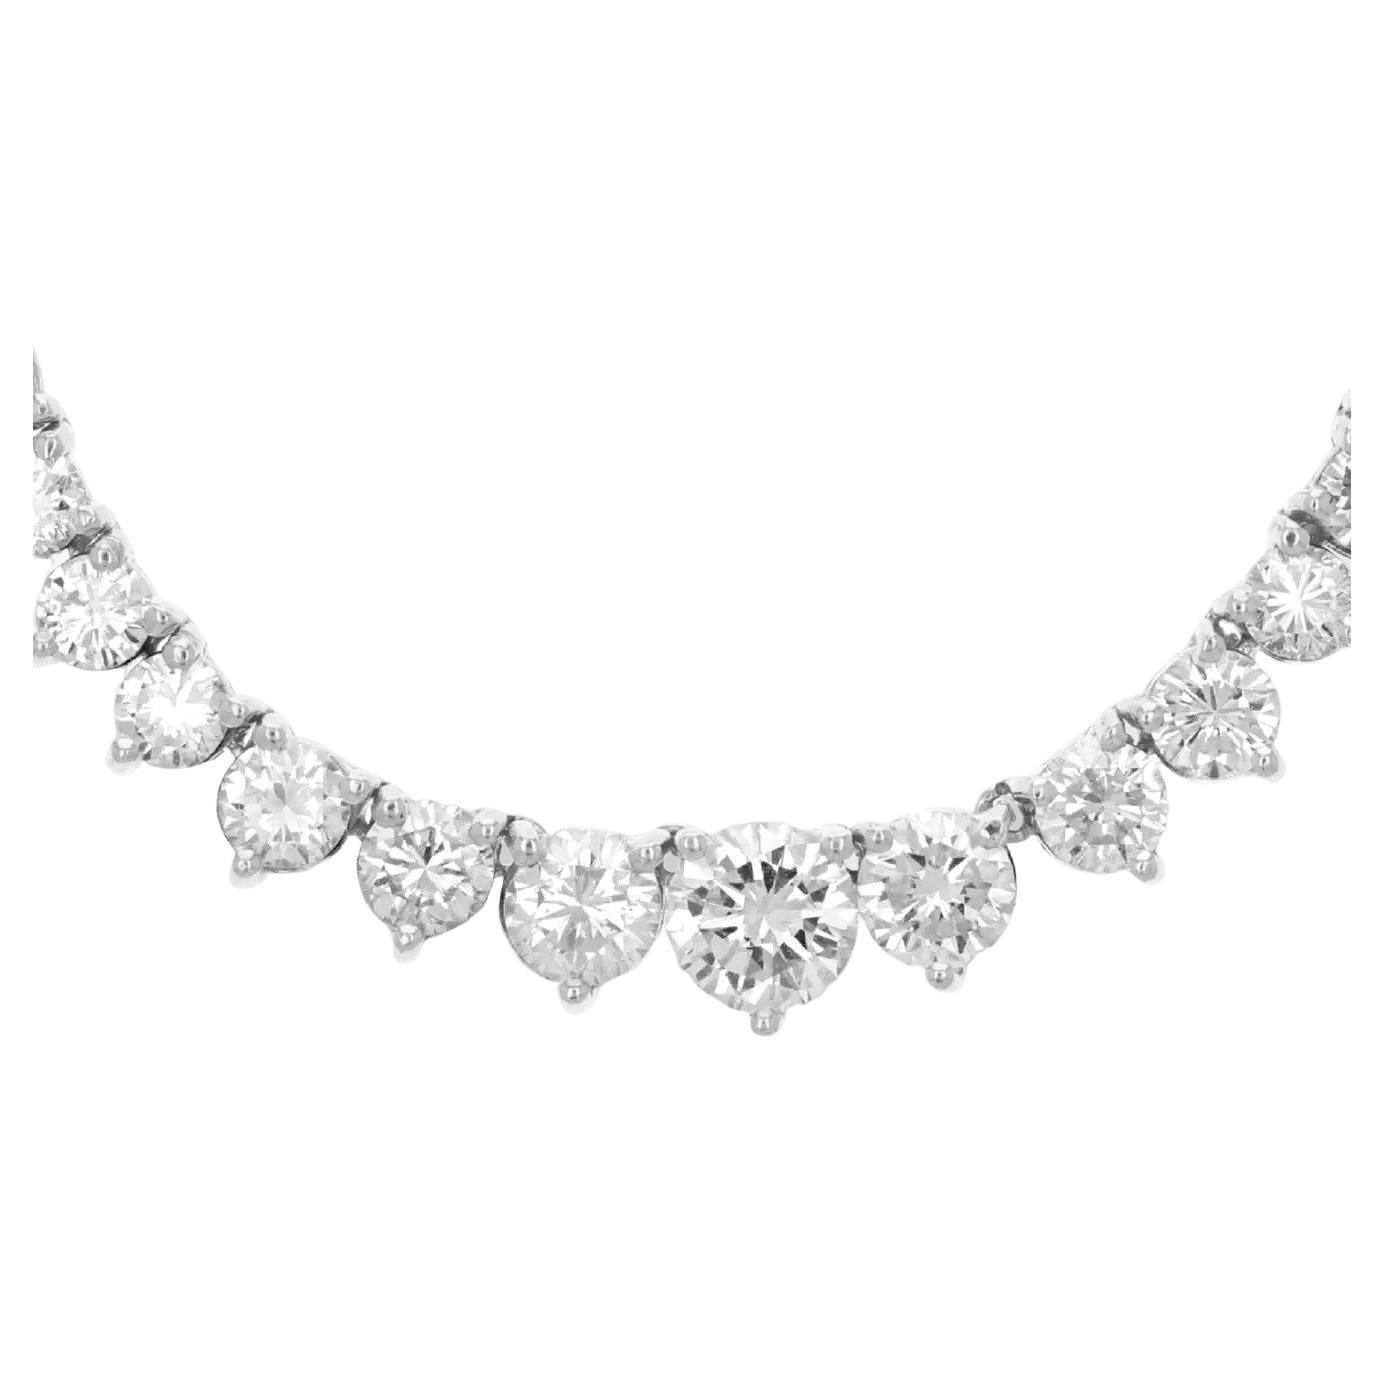 25 carat graduated diamond necklace